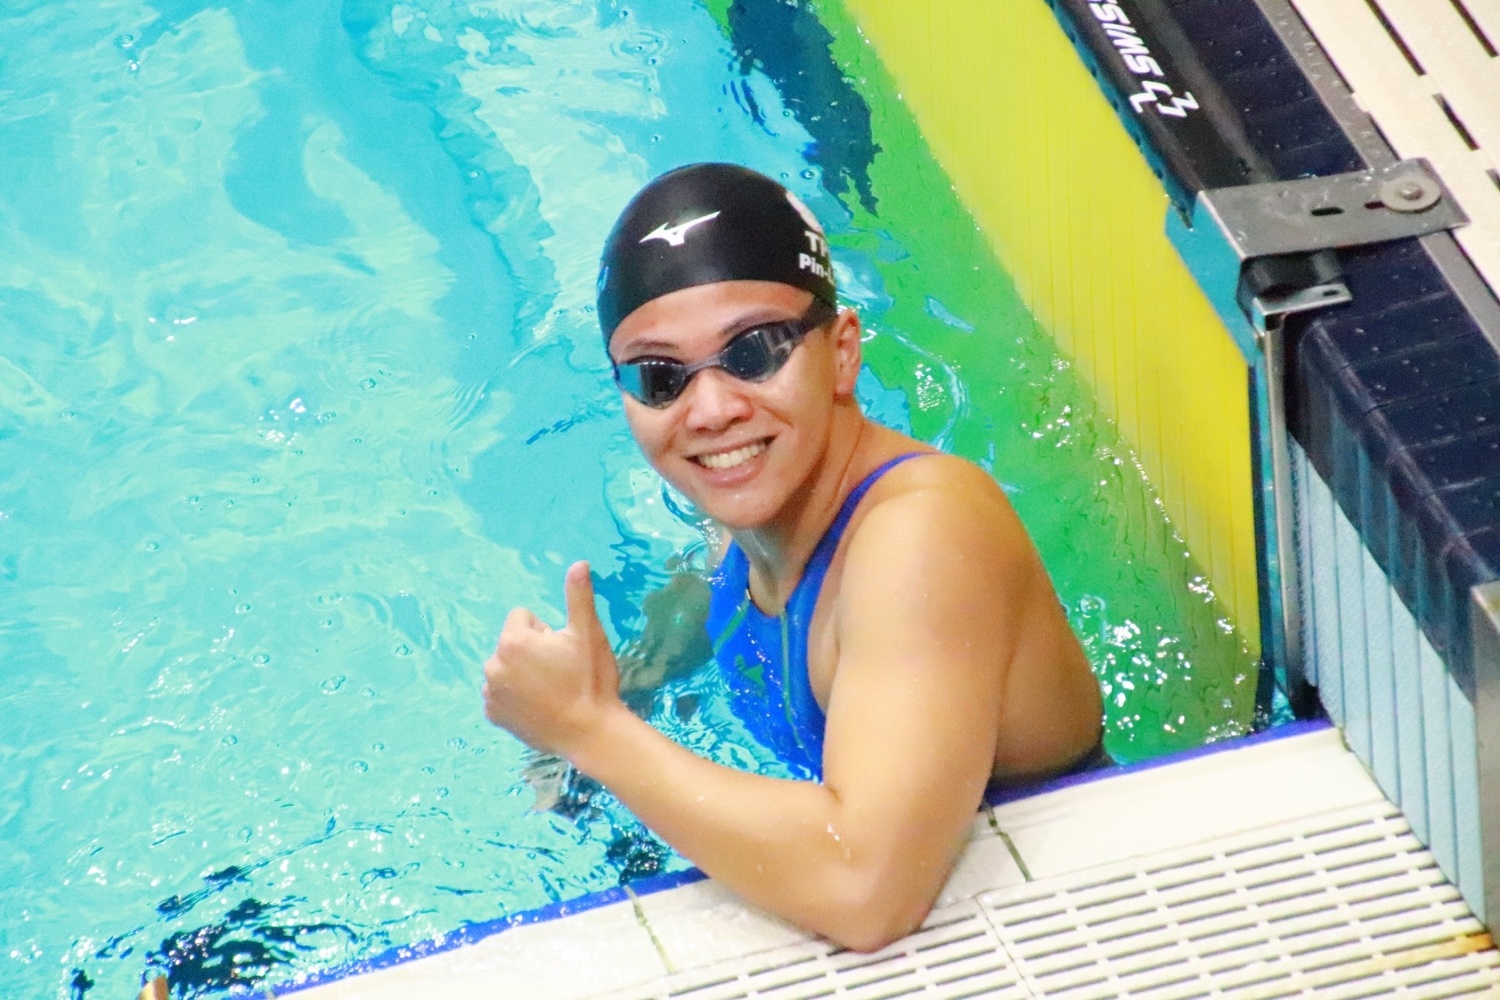 台中女蛟龍 何品莉勇奪世界蹼泳錦標賽2金1銀 創我國史上最佳